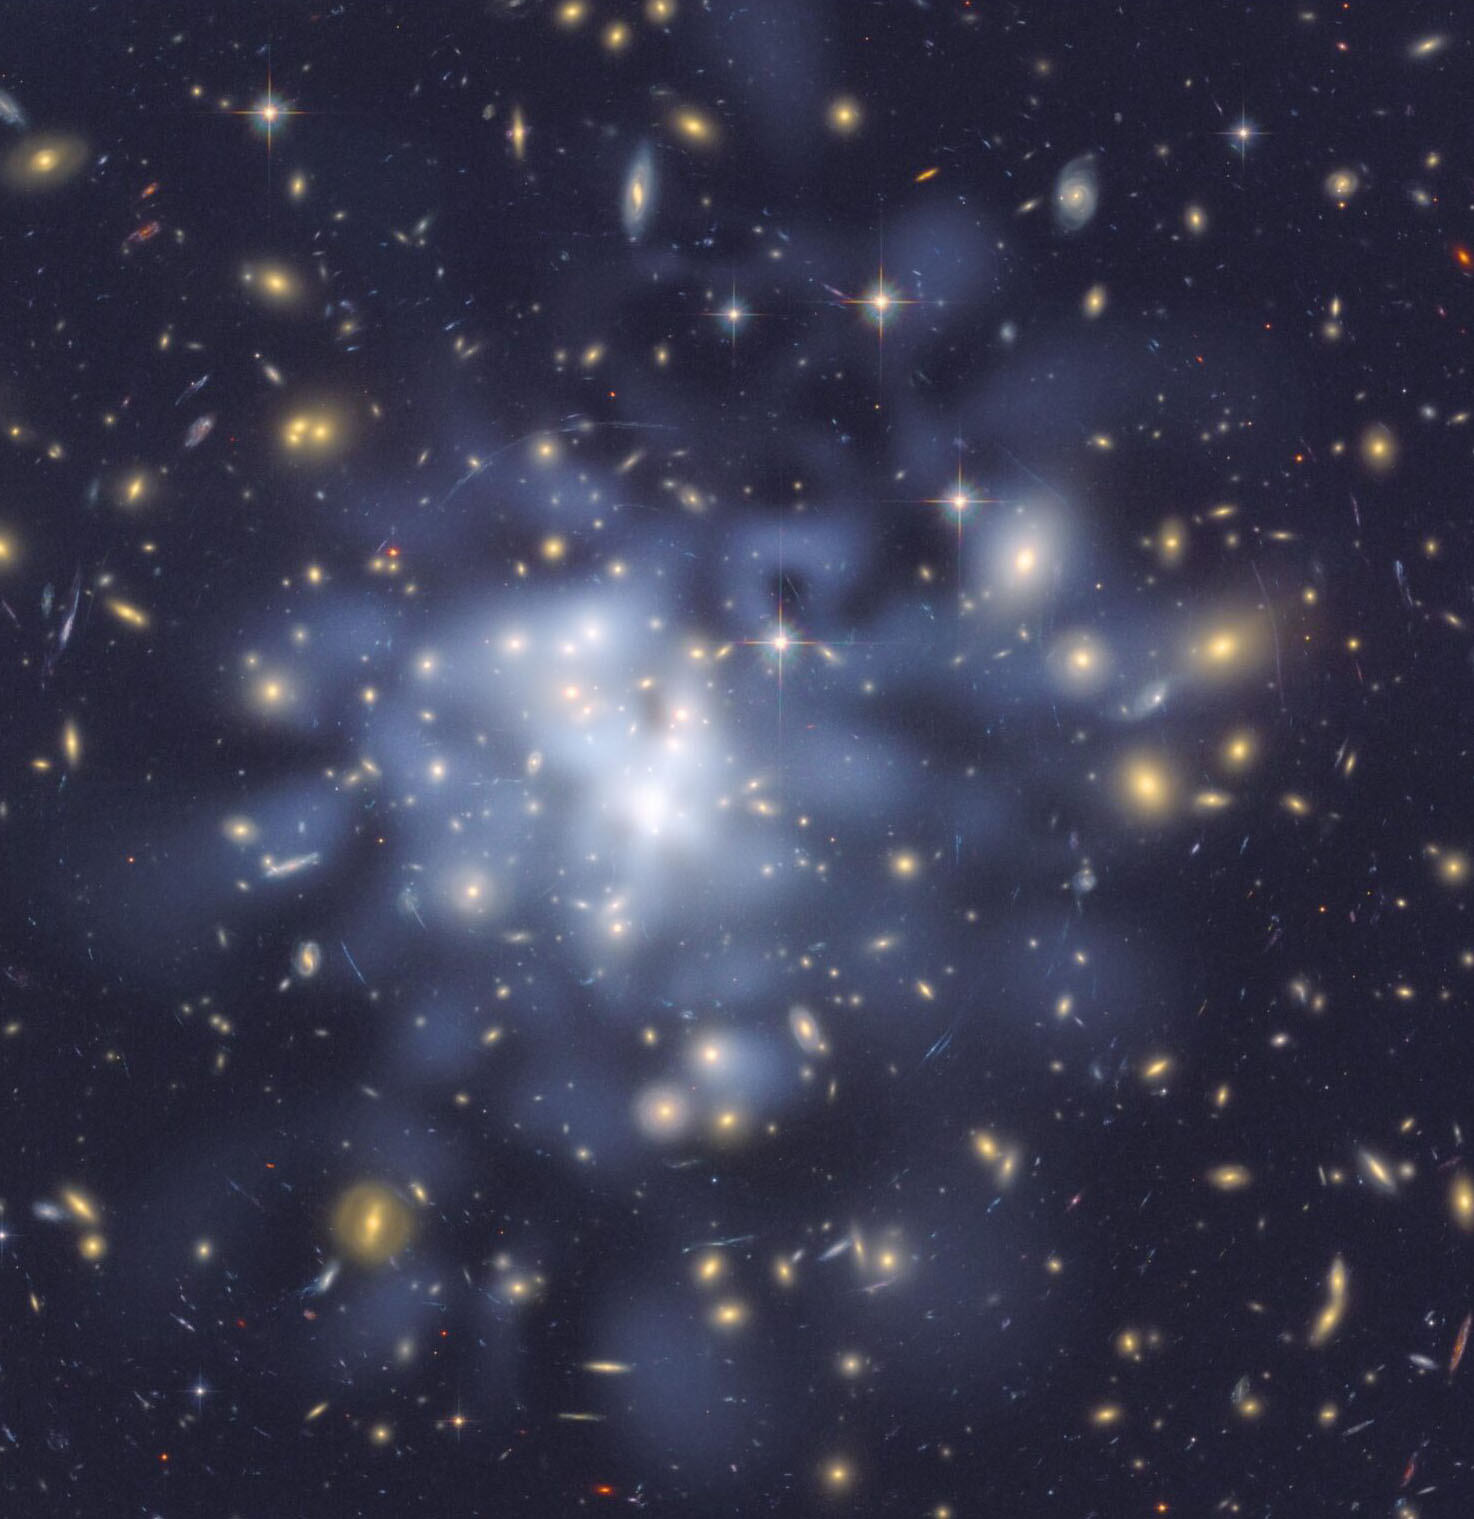 dark matter map in galaxy cluster Abel 1689